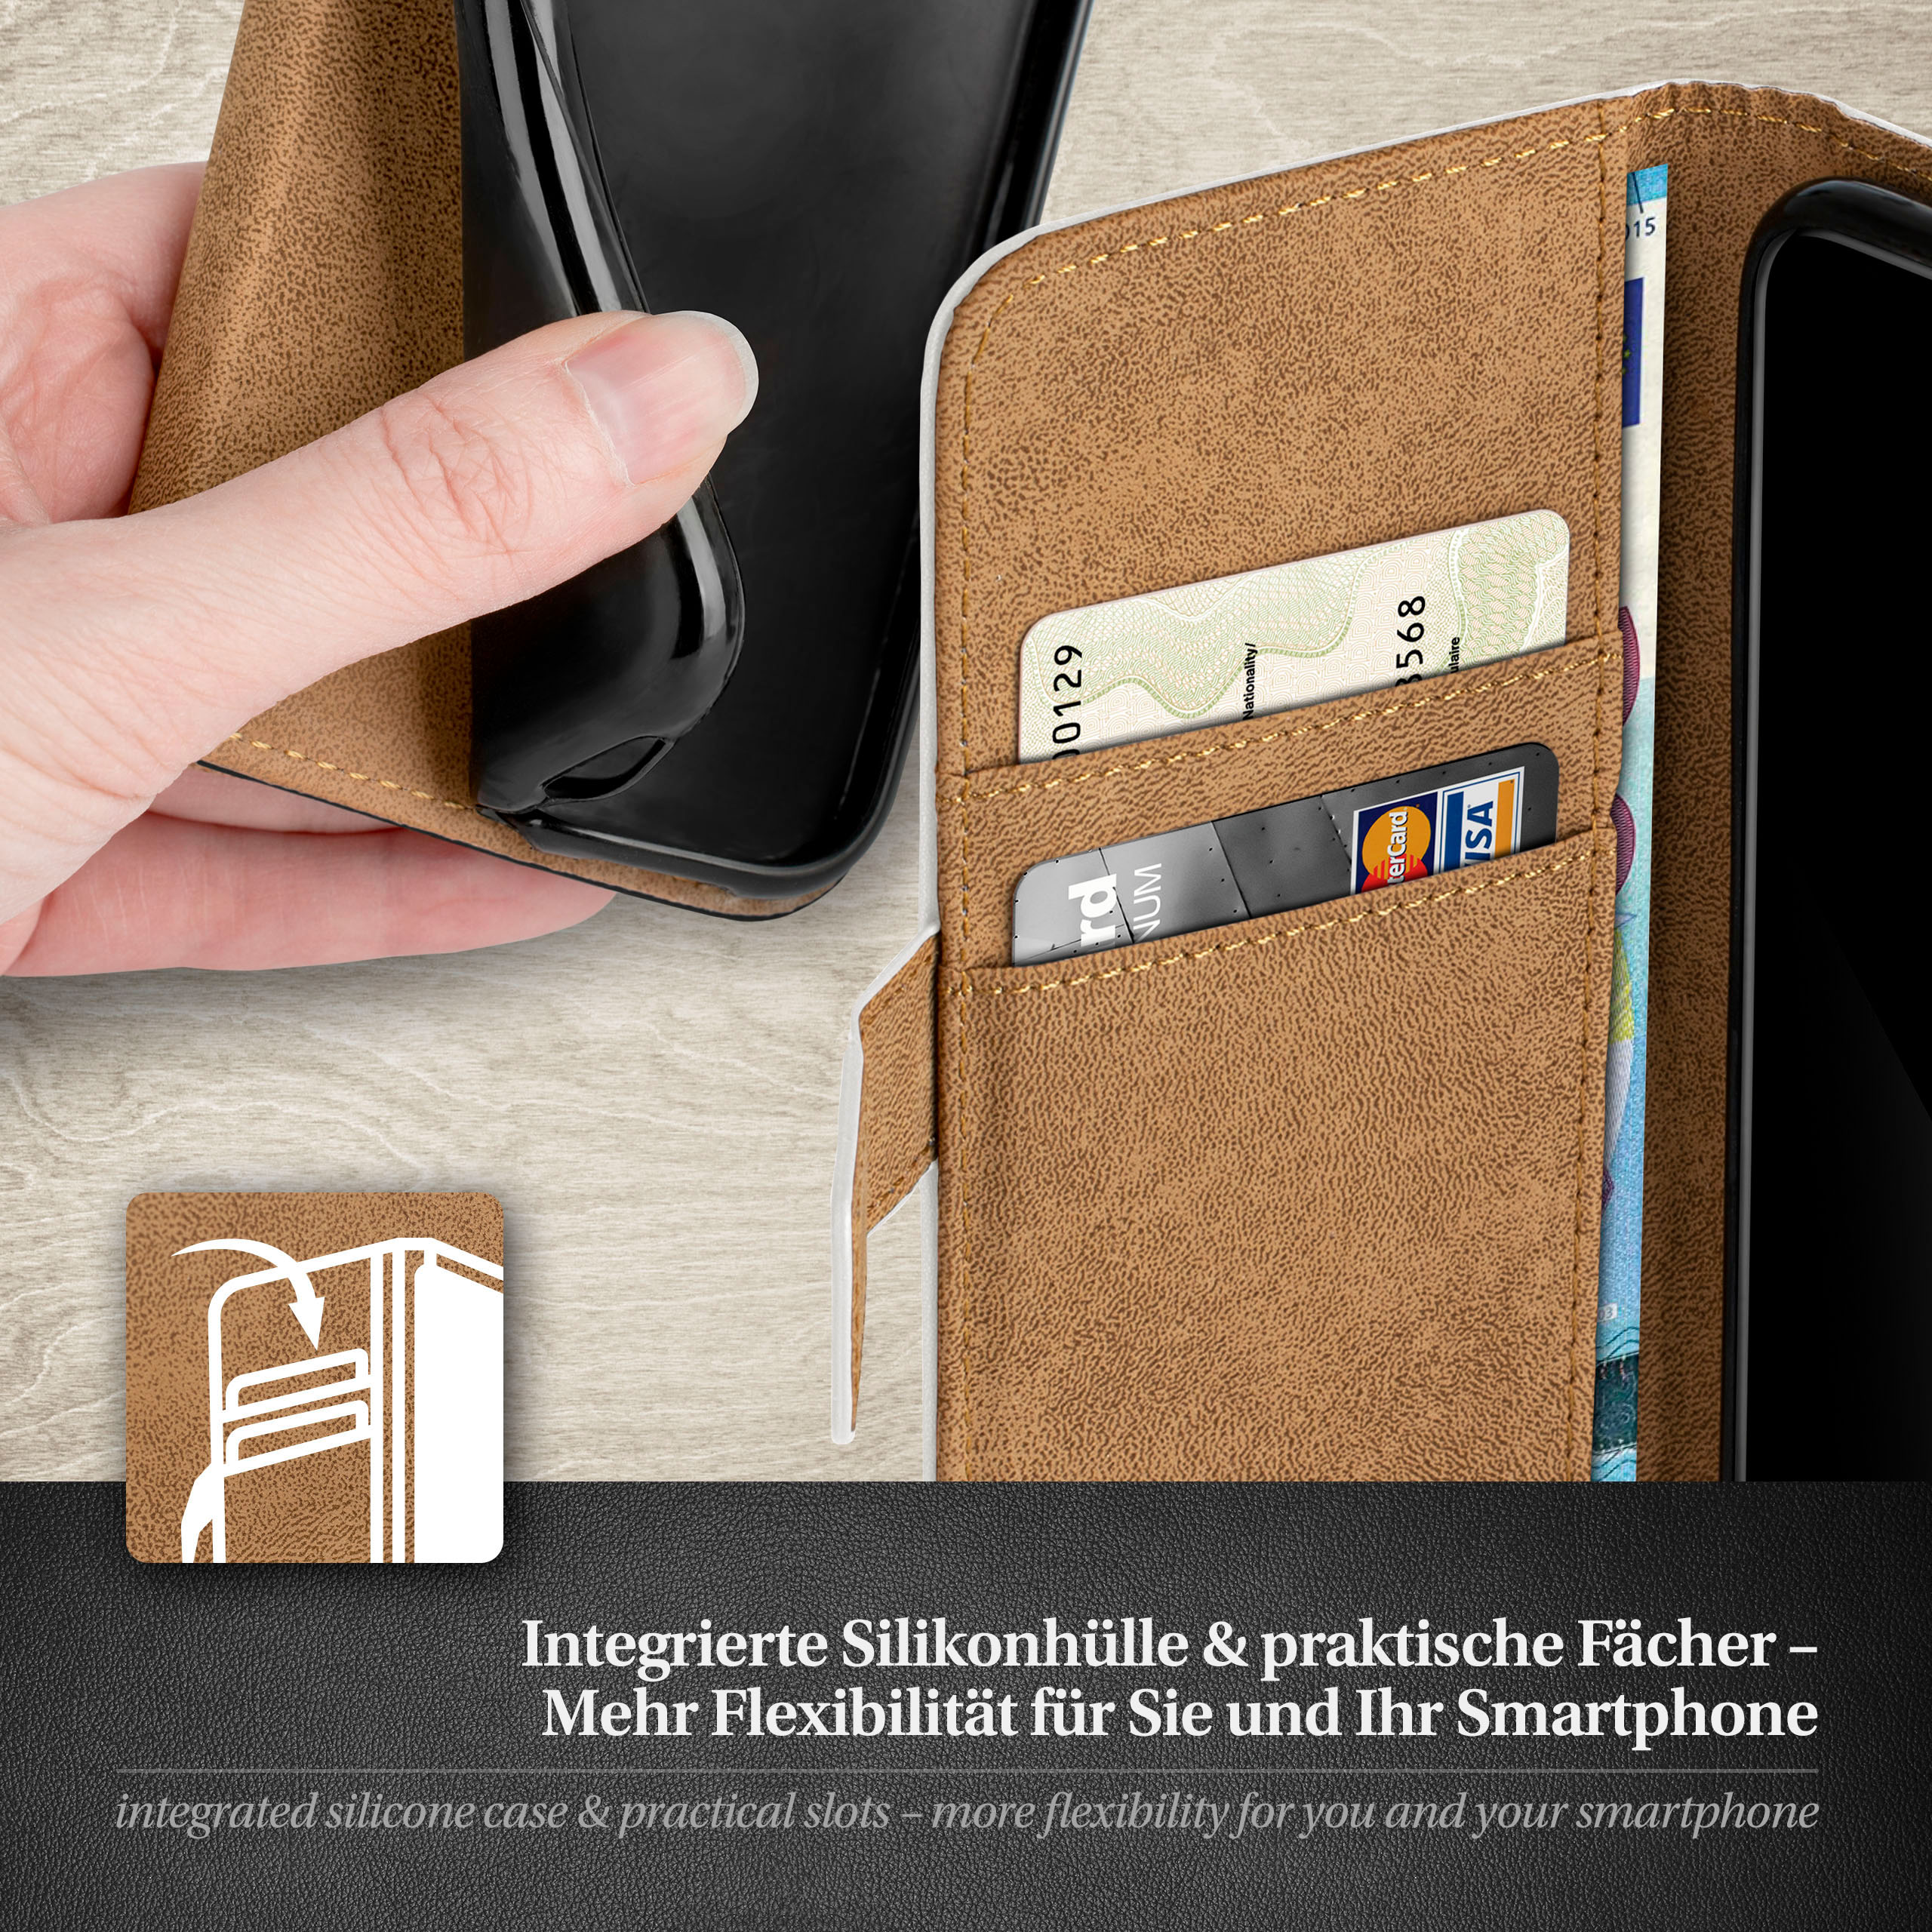 S6 Case, Galaxy Edge, MOEX Book Pearl-White Bookcover, Samsung,